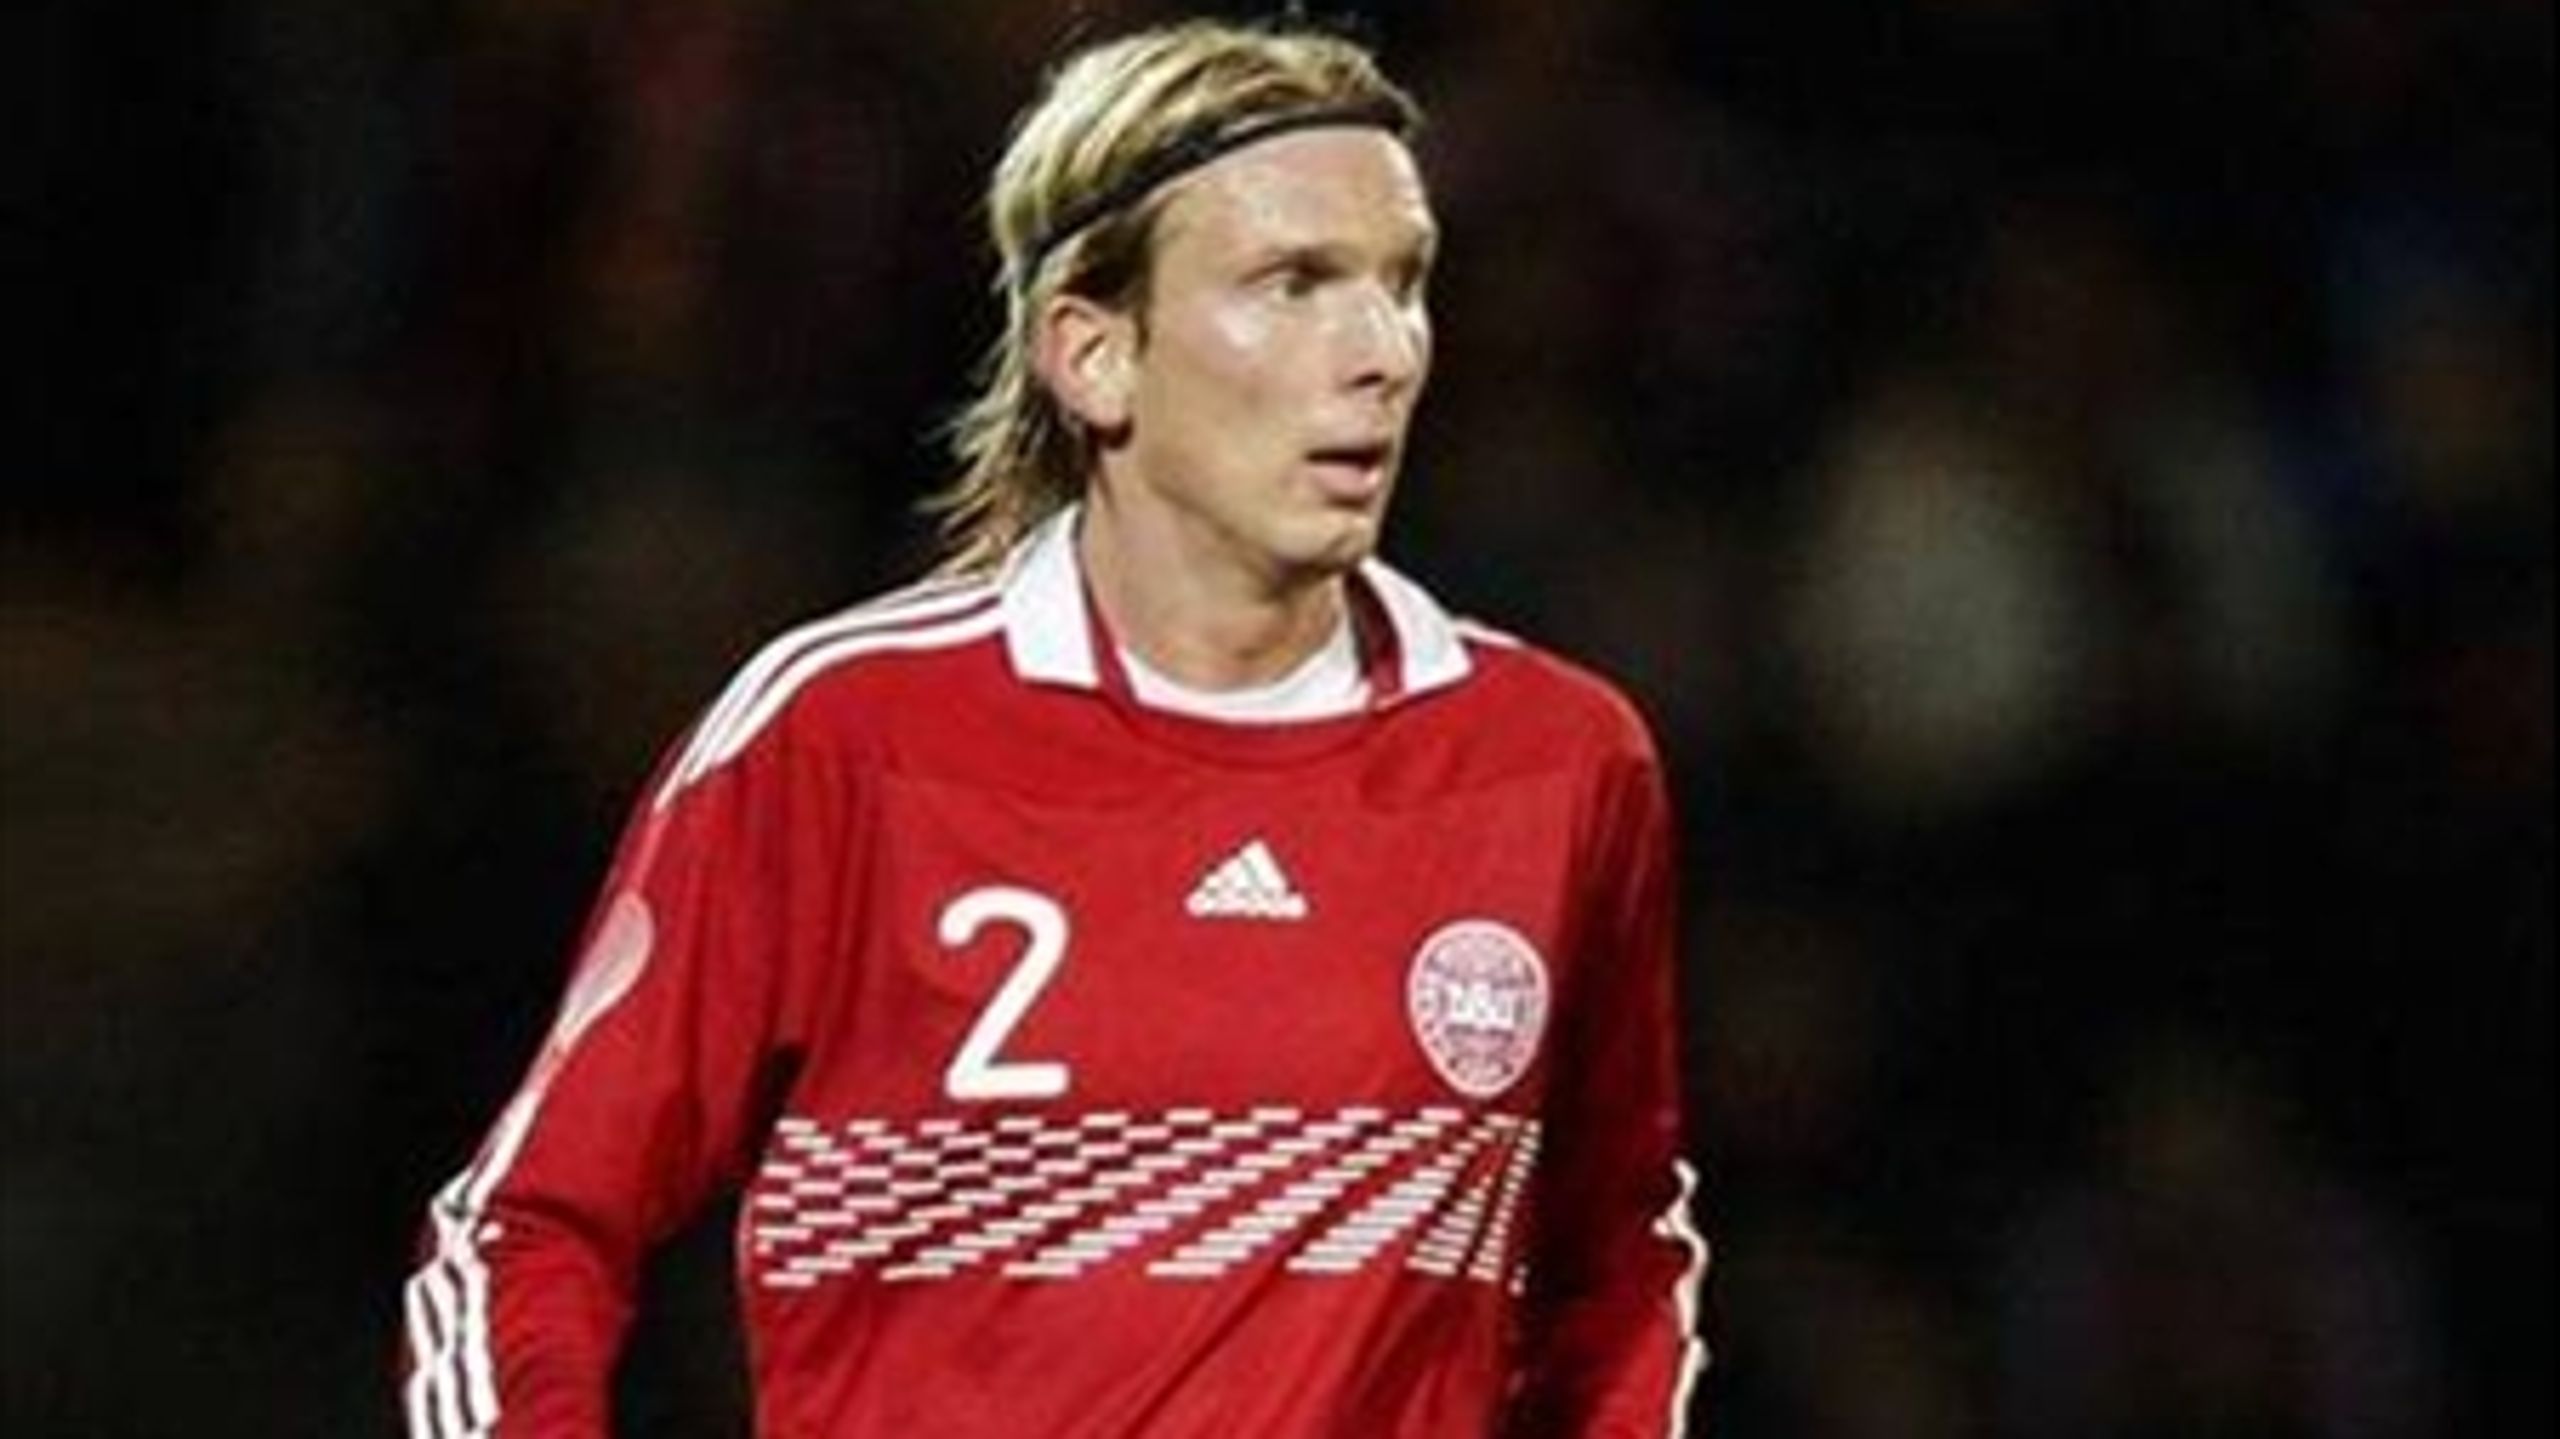 Hvis EU skulle stille med et fodboldhold til VM, ville Danmark sandsynligvis bidrage med sine defensive styrker. Her er det den danske "balancespiller" Christian Poulsen.